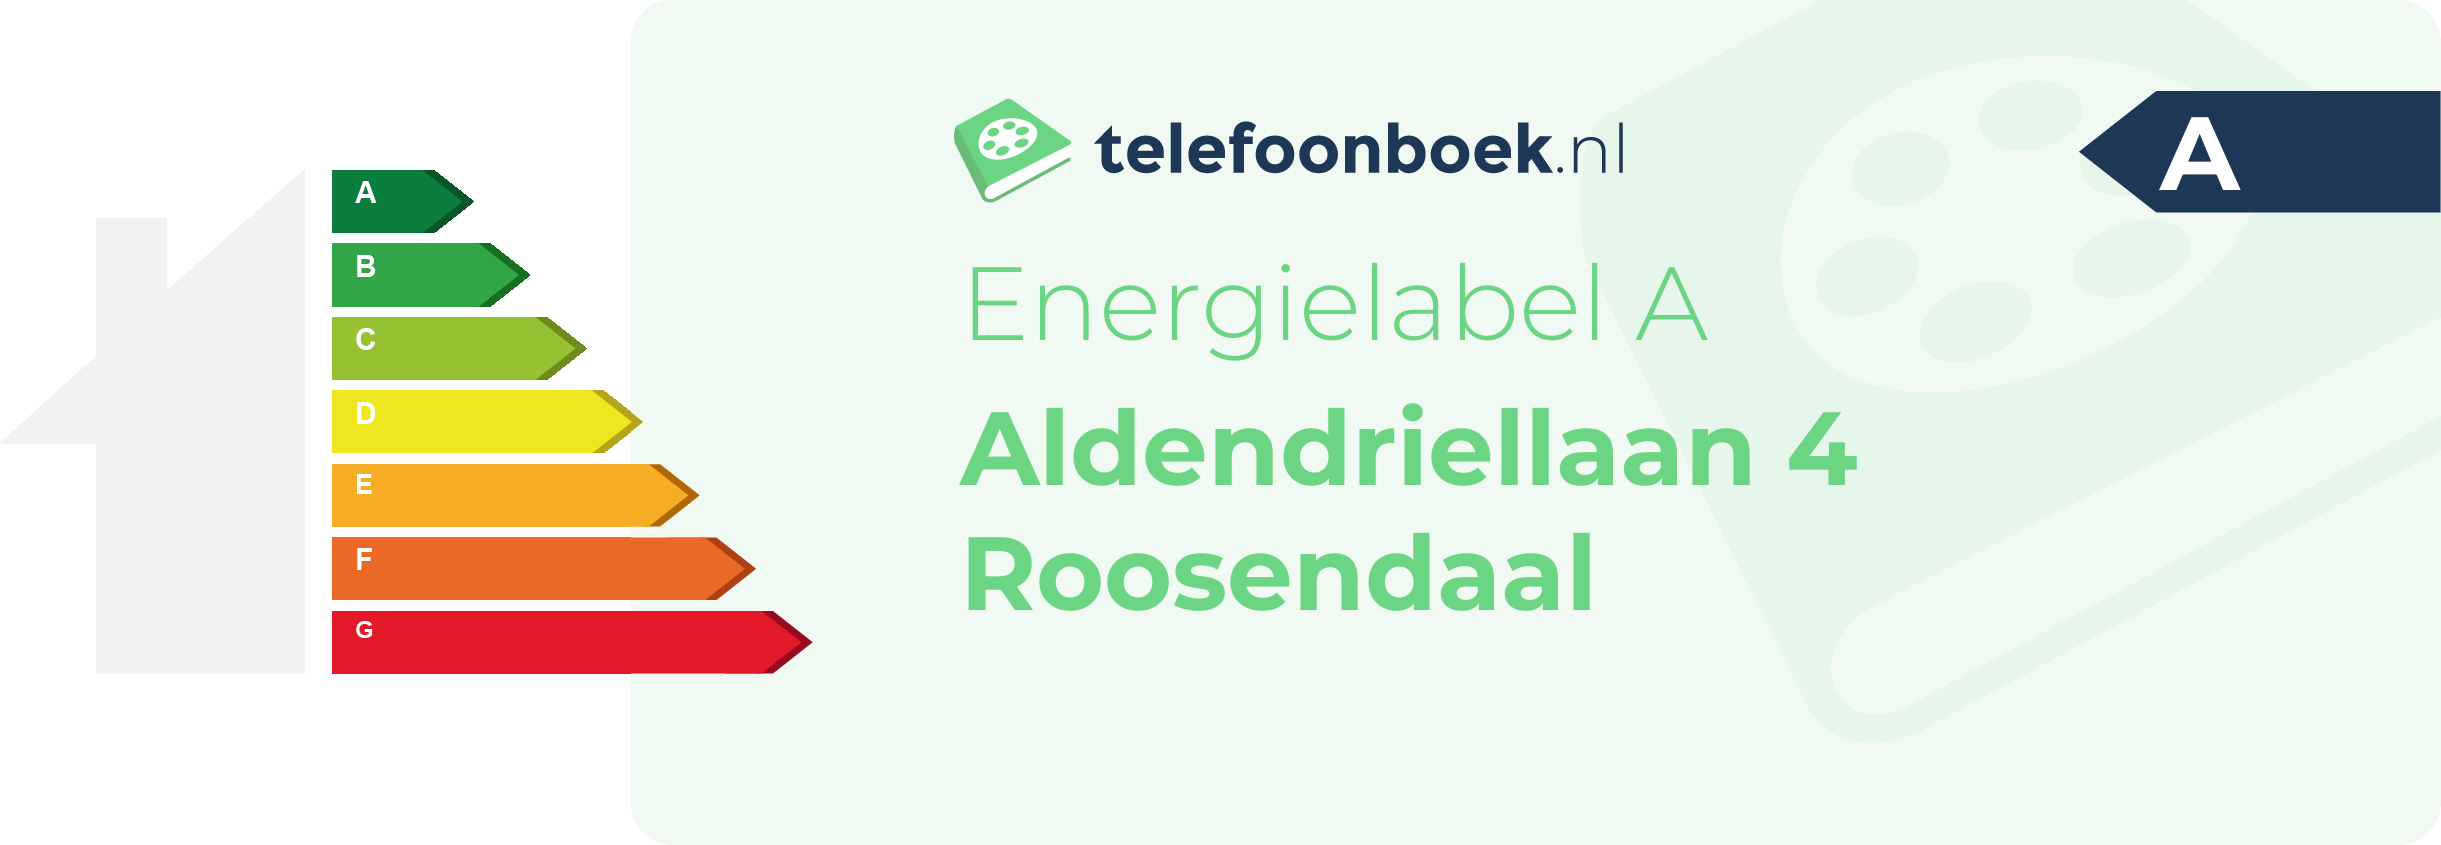 Energielabel Aldendriellaan 4 Roosendaal